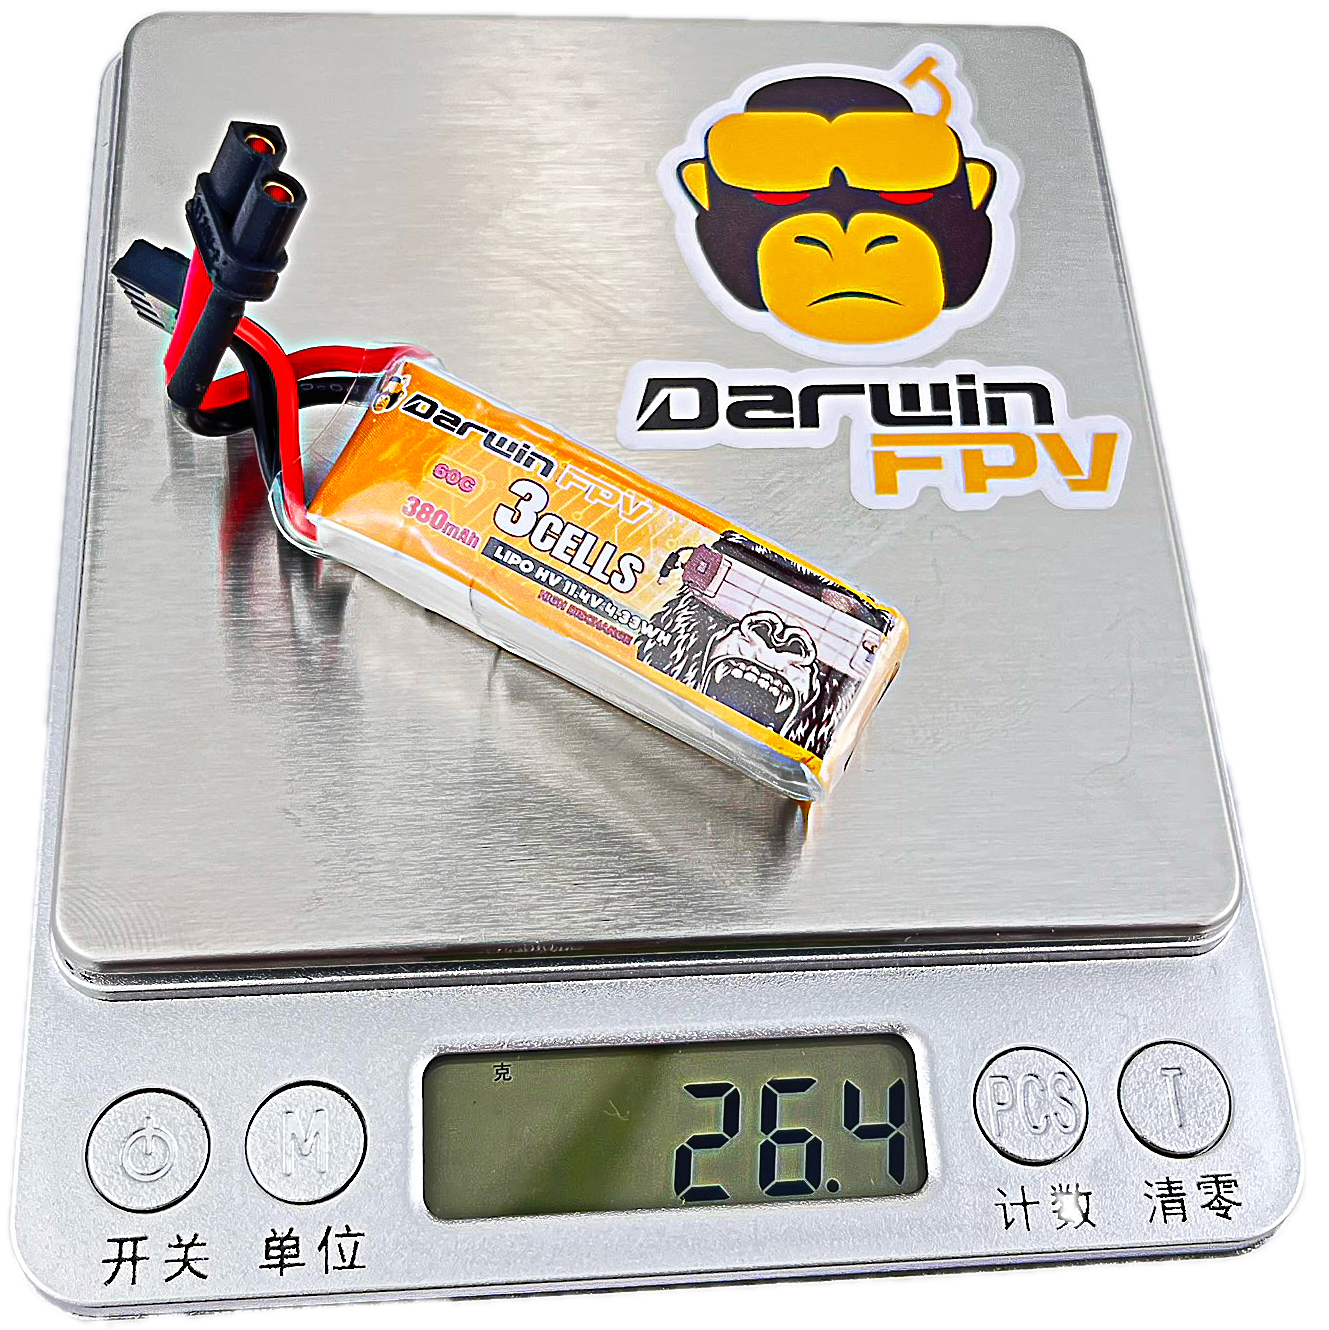 DarwinFPV 380mAh 3S 11.4V 60C fpv 无人机电池